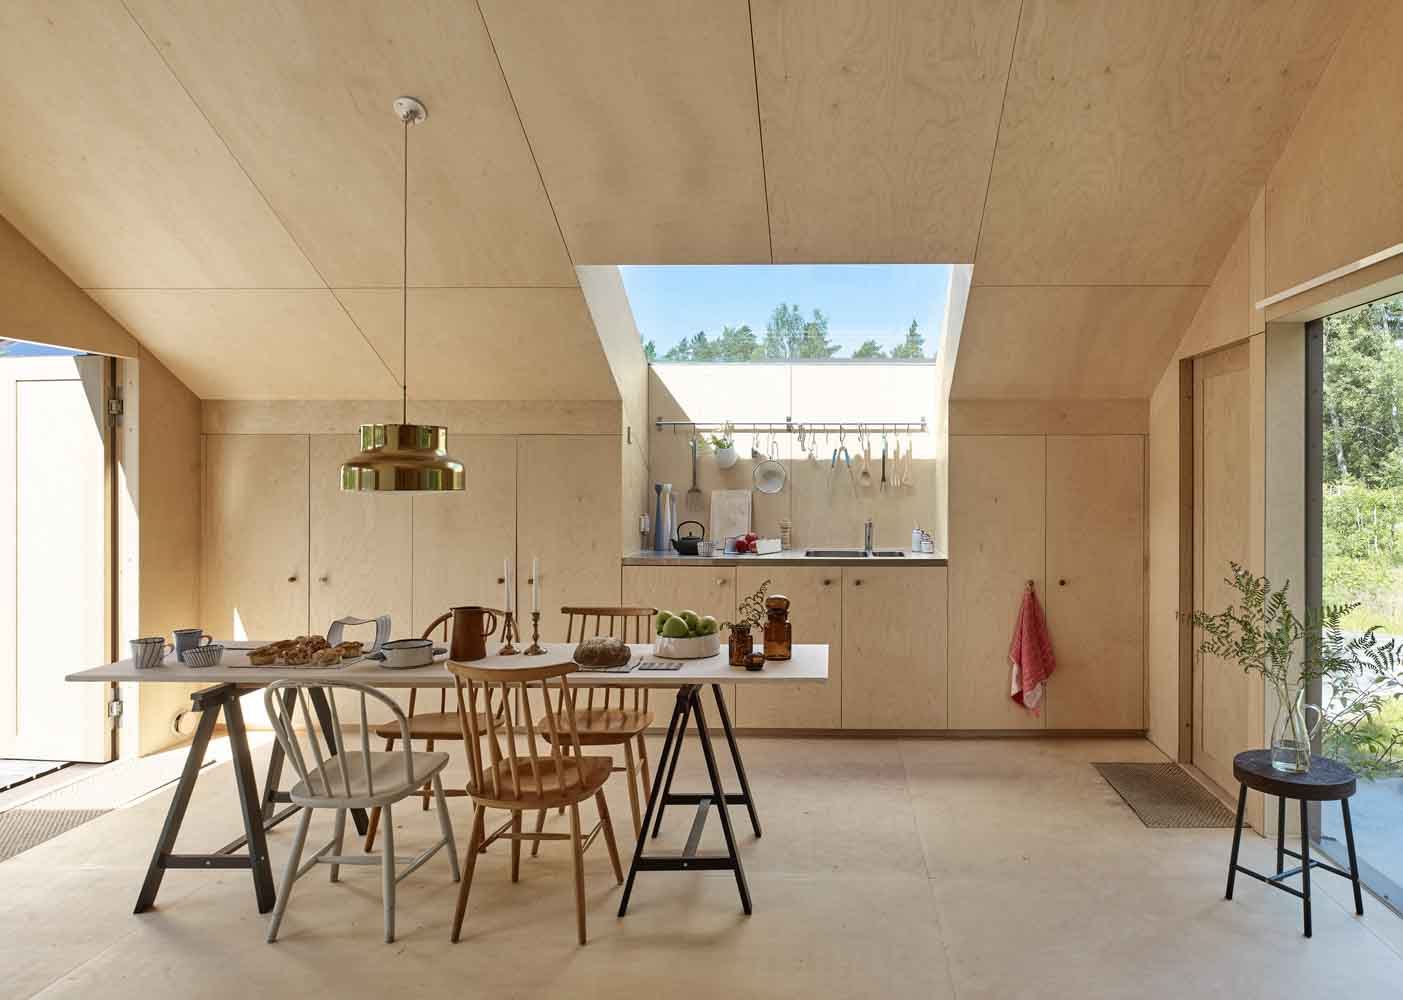 Ván ép Plywood được sáng tạo làm trần nhà vô cùng độc đáo 